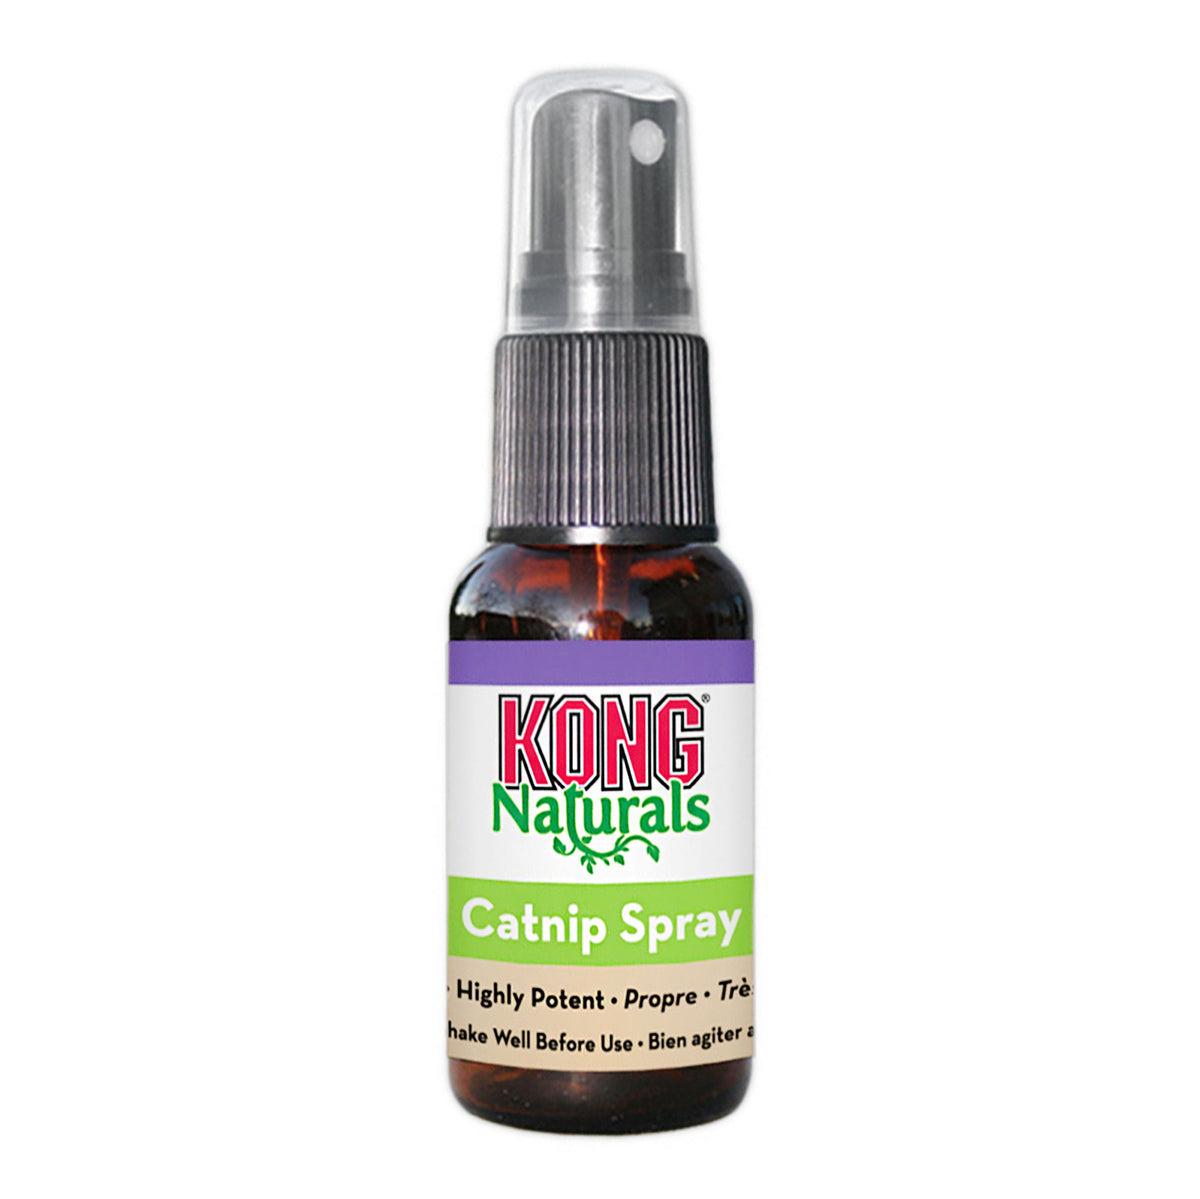 KONG Naturals Catnip Spray 28mL